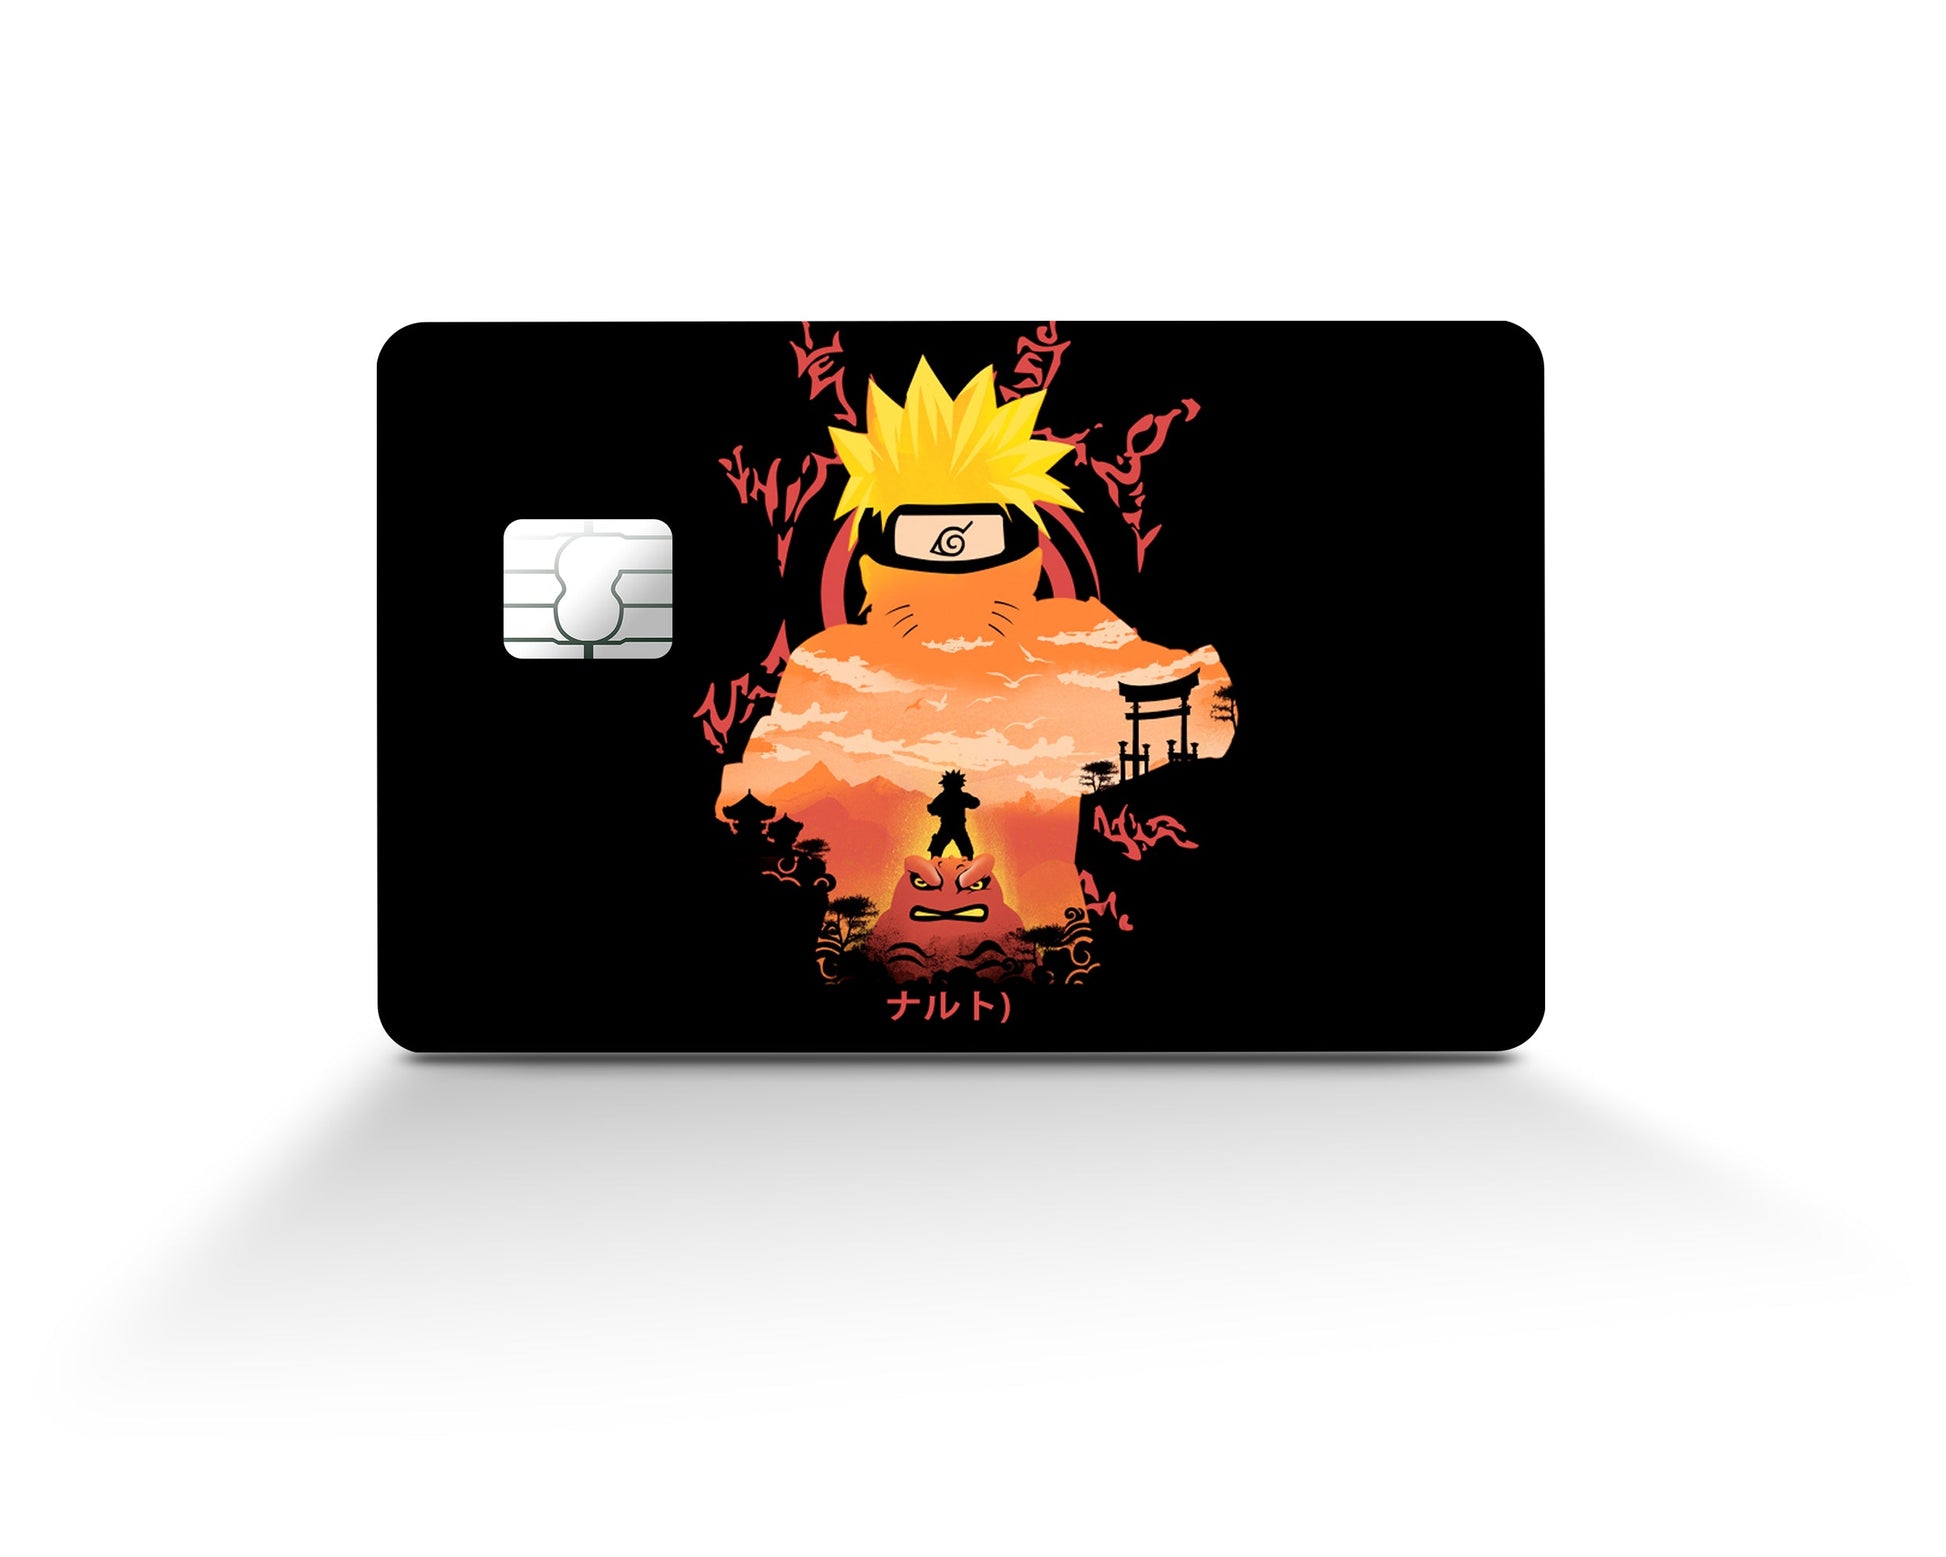 Naruto Credit Card Skin